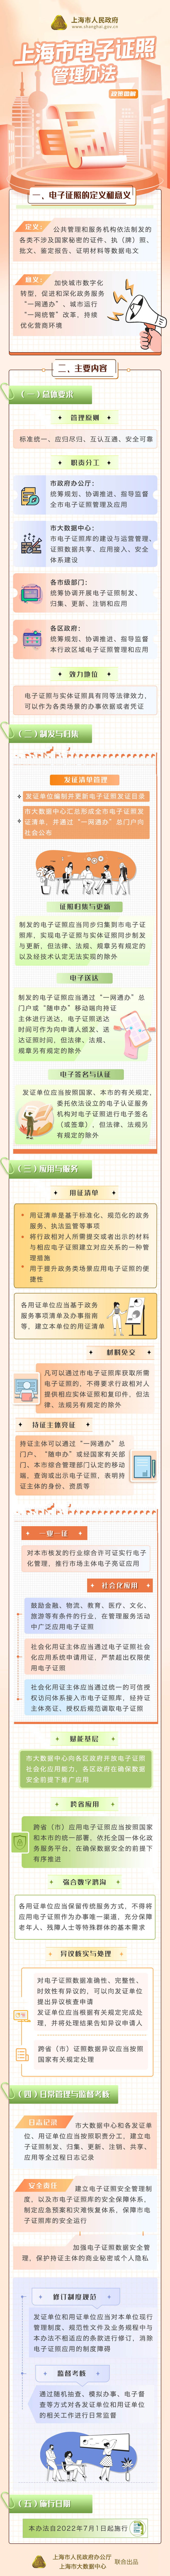 《上海市电子证照管理办法》政策图解.jpg